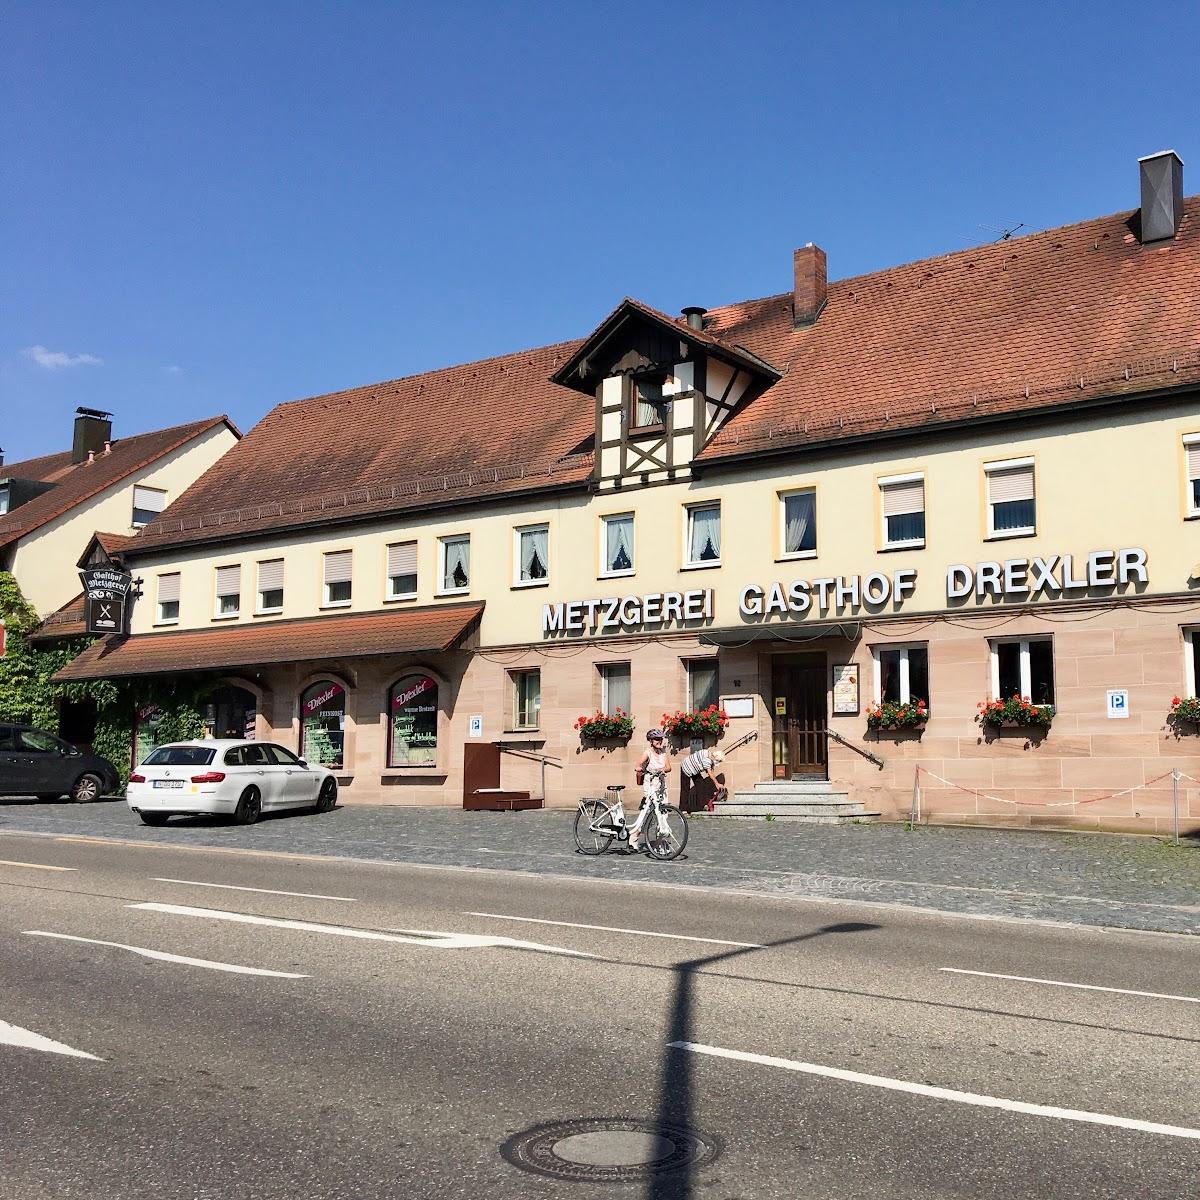 Restaurant "Gasthof Drechsler" in Schwabach